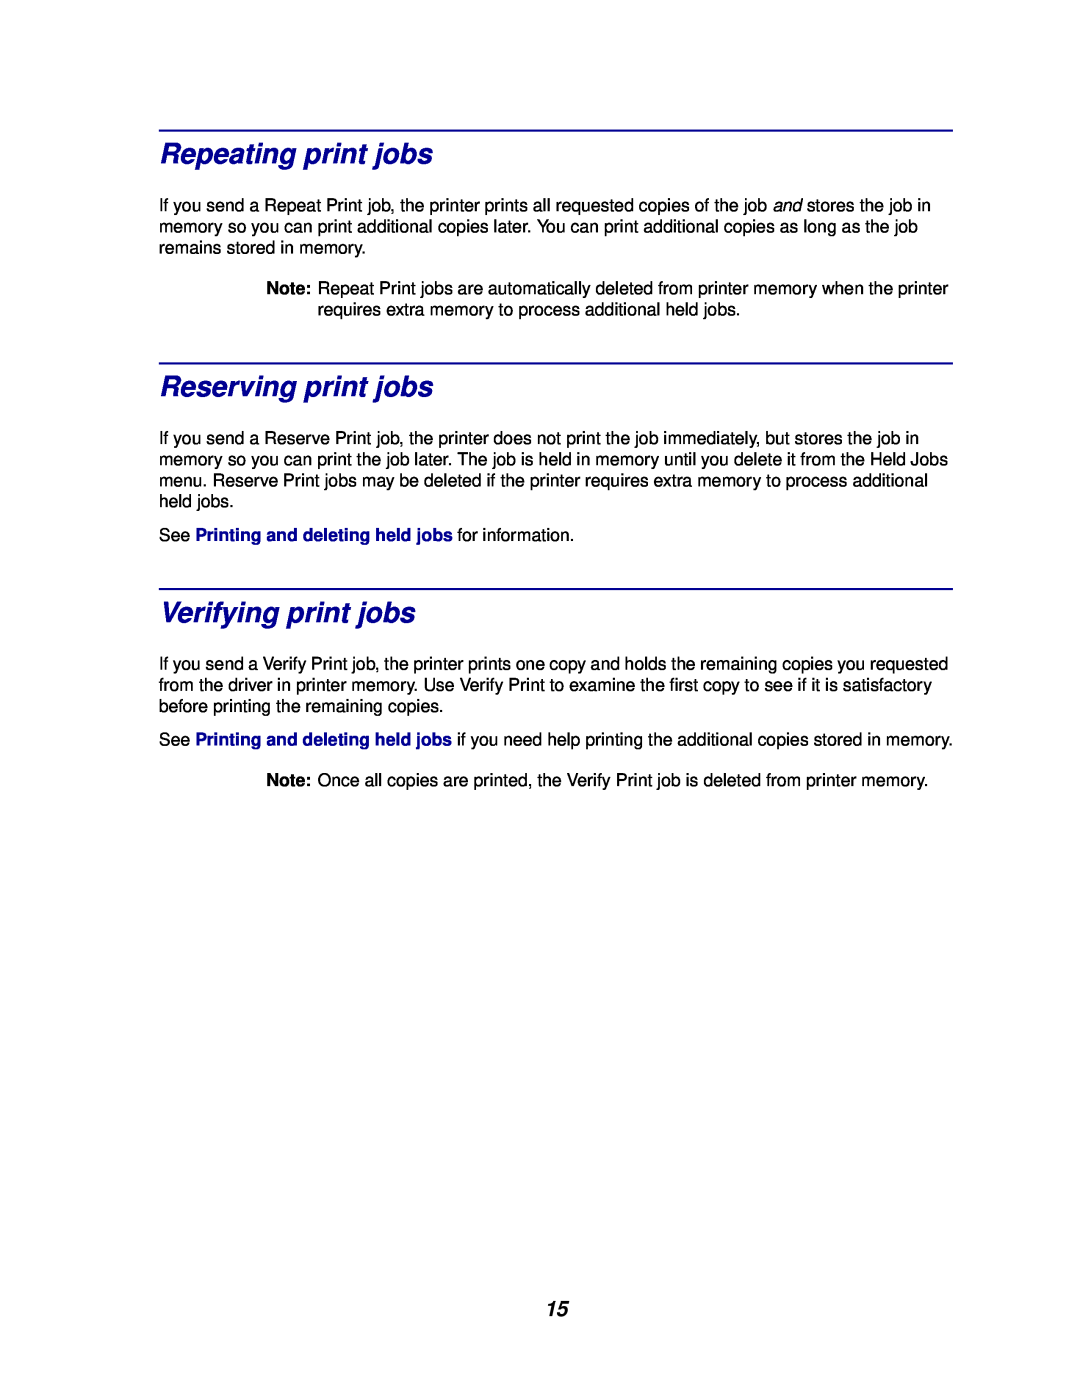 Lexmark 812 manual Repeating print jobs, Reserving print jobs, Verifying print jobs 